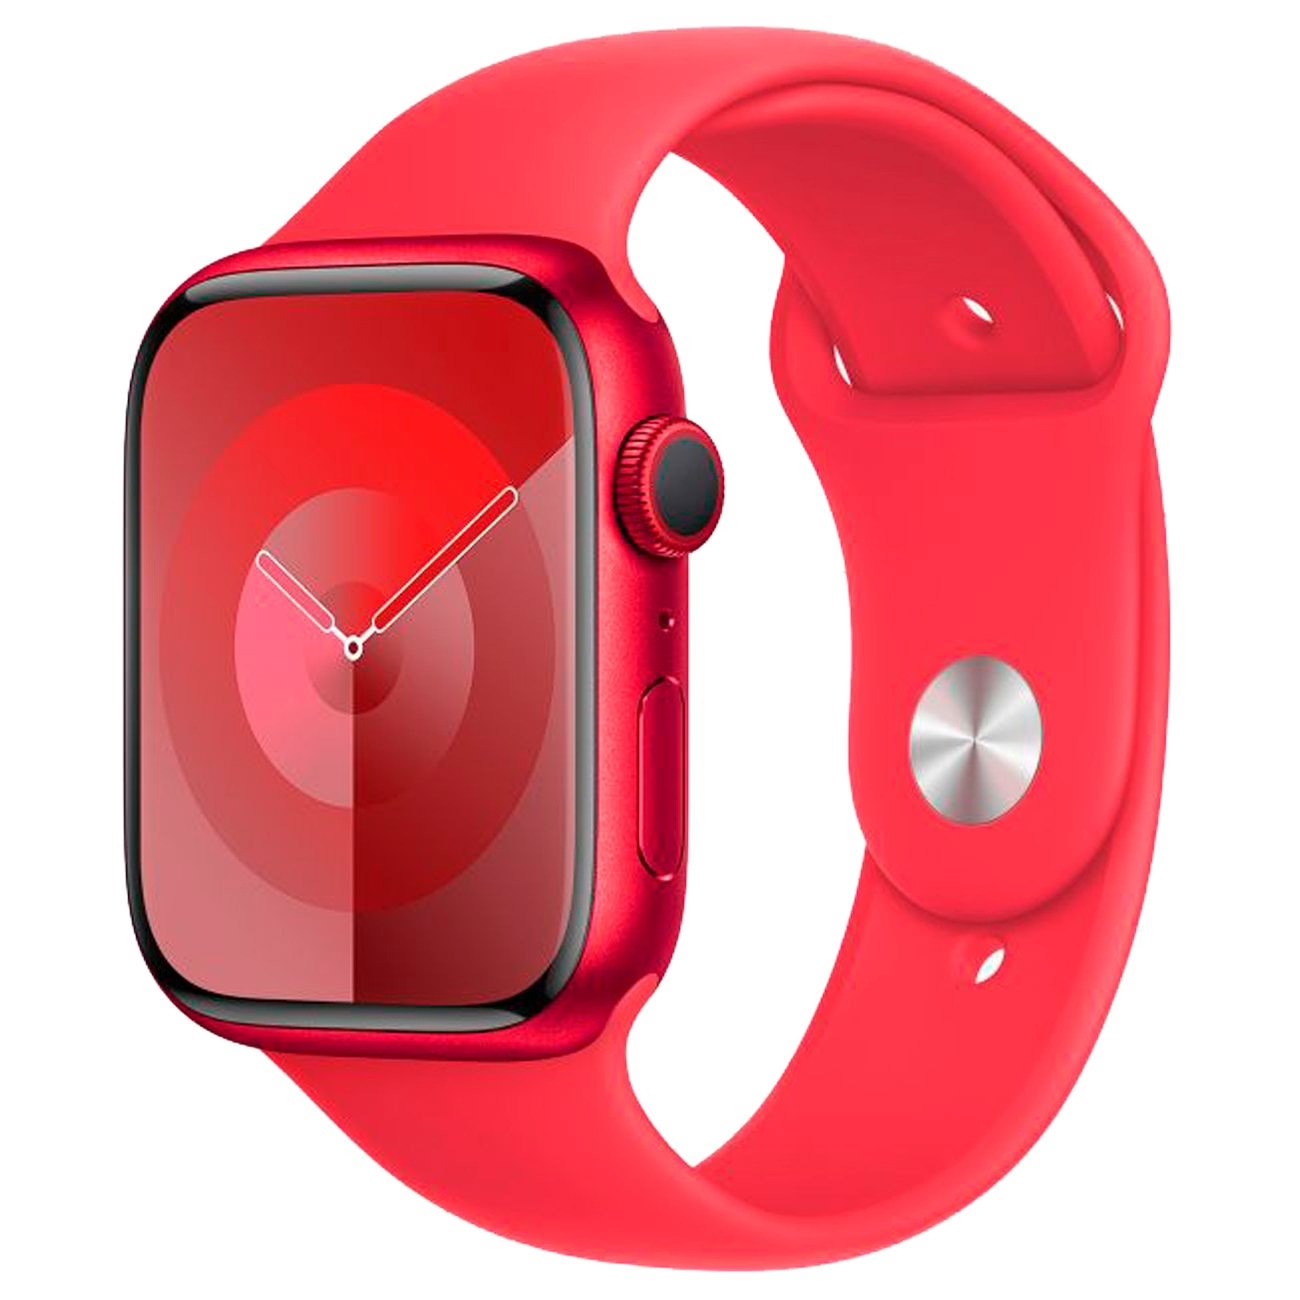 Купить смарт-часы apple watch s9 45mm red Apple Watch 9 в официальном магазине Apple, Samsung, Xiaomi. iPixel.ru Купить, заказ, кредит, рассрочка, отзывы,  характеристики, цена,  фотографии, в подарок.